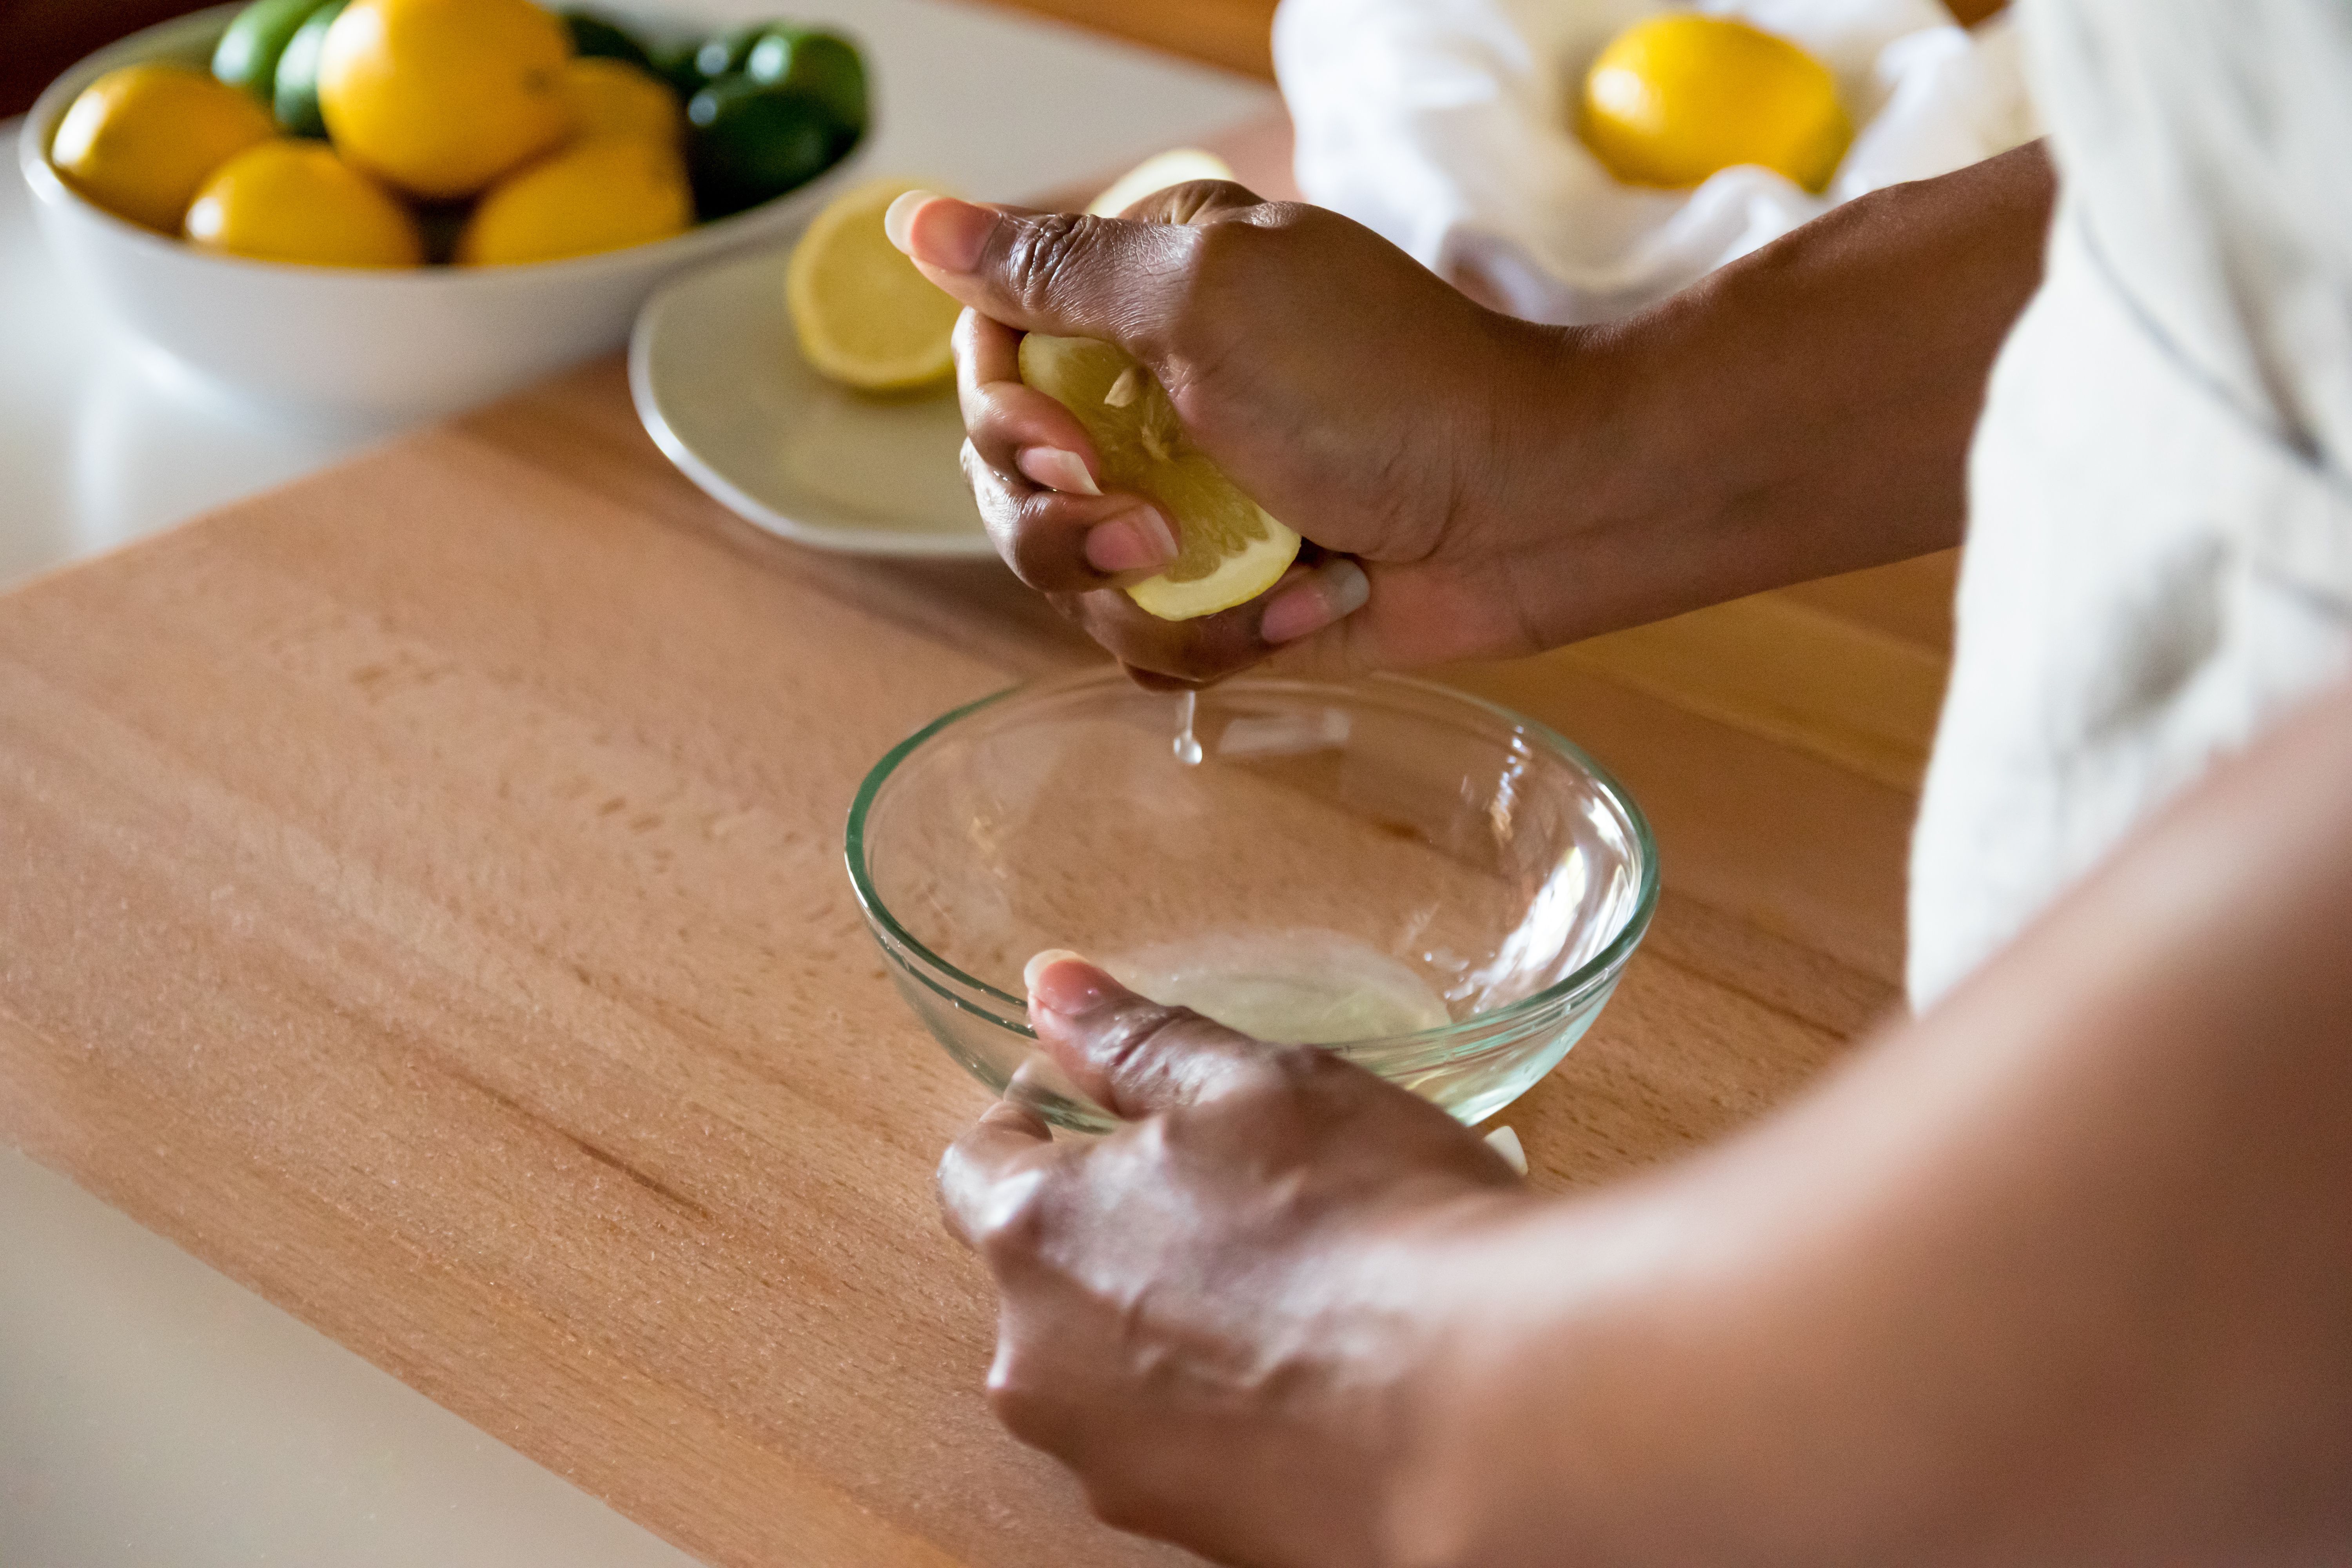 Langsam anfangen: Wer Zitronenwasser zum Abnehmen in den Speiseplan integrieren möchte, sollte die Trinkmenge allmählich steigern und beobachten, wie der Körper darauf reagiert. Für den Anfang reicht der Saft einer halben Zitrone pro Tag. 